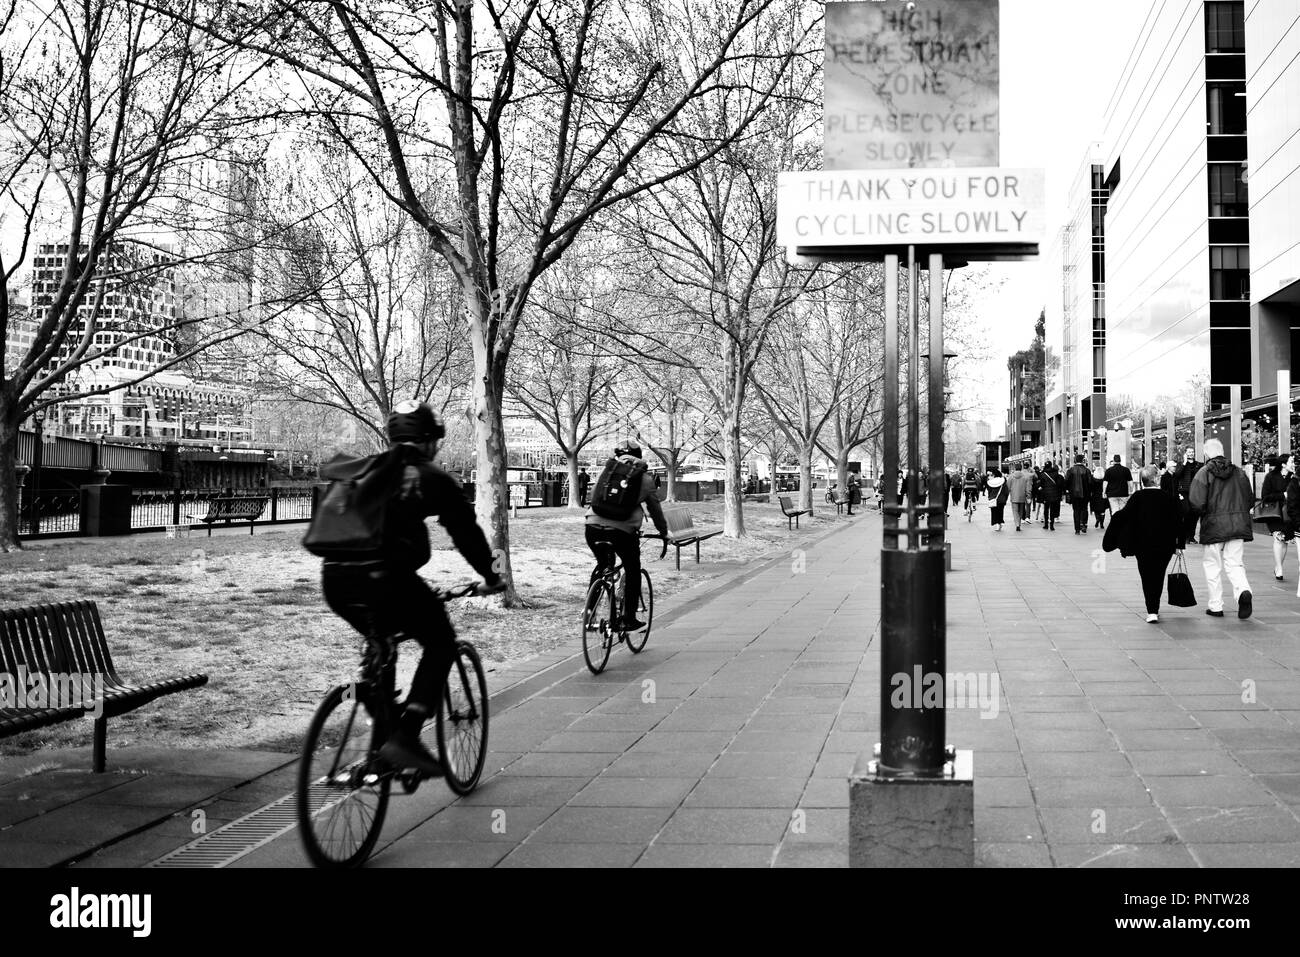 Radfahrer vorbei ein Dankeschön für Radfahren langsam Zeichen, Melbourne, VIC, Australien Stockfoto